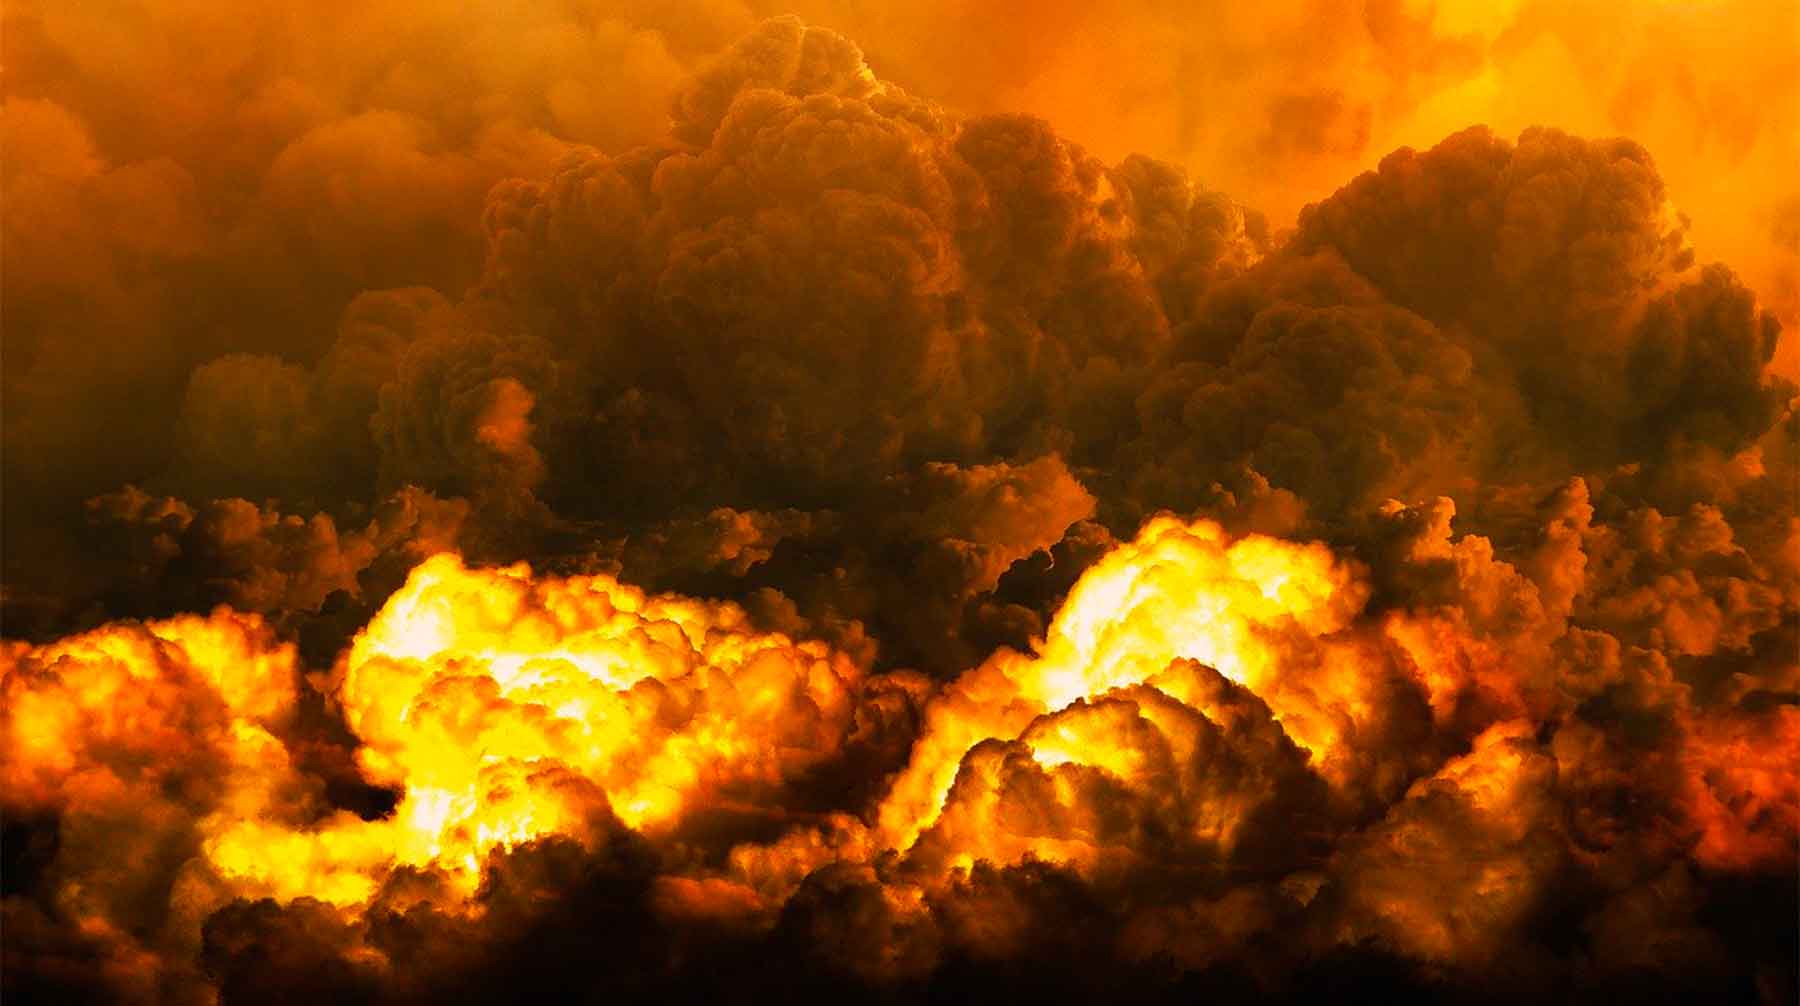 Причиной обрушения многоэтажки стал взрыв газа, подчеркнул пресс-секретарь президента России Фото: © pixabay.com